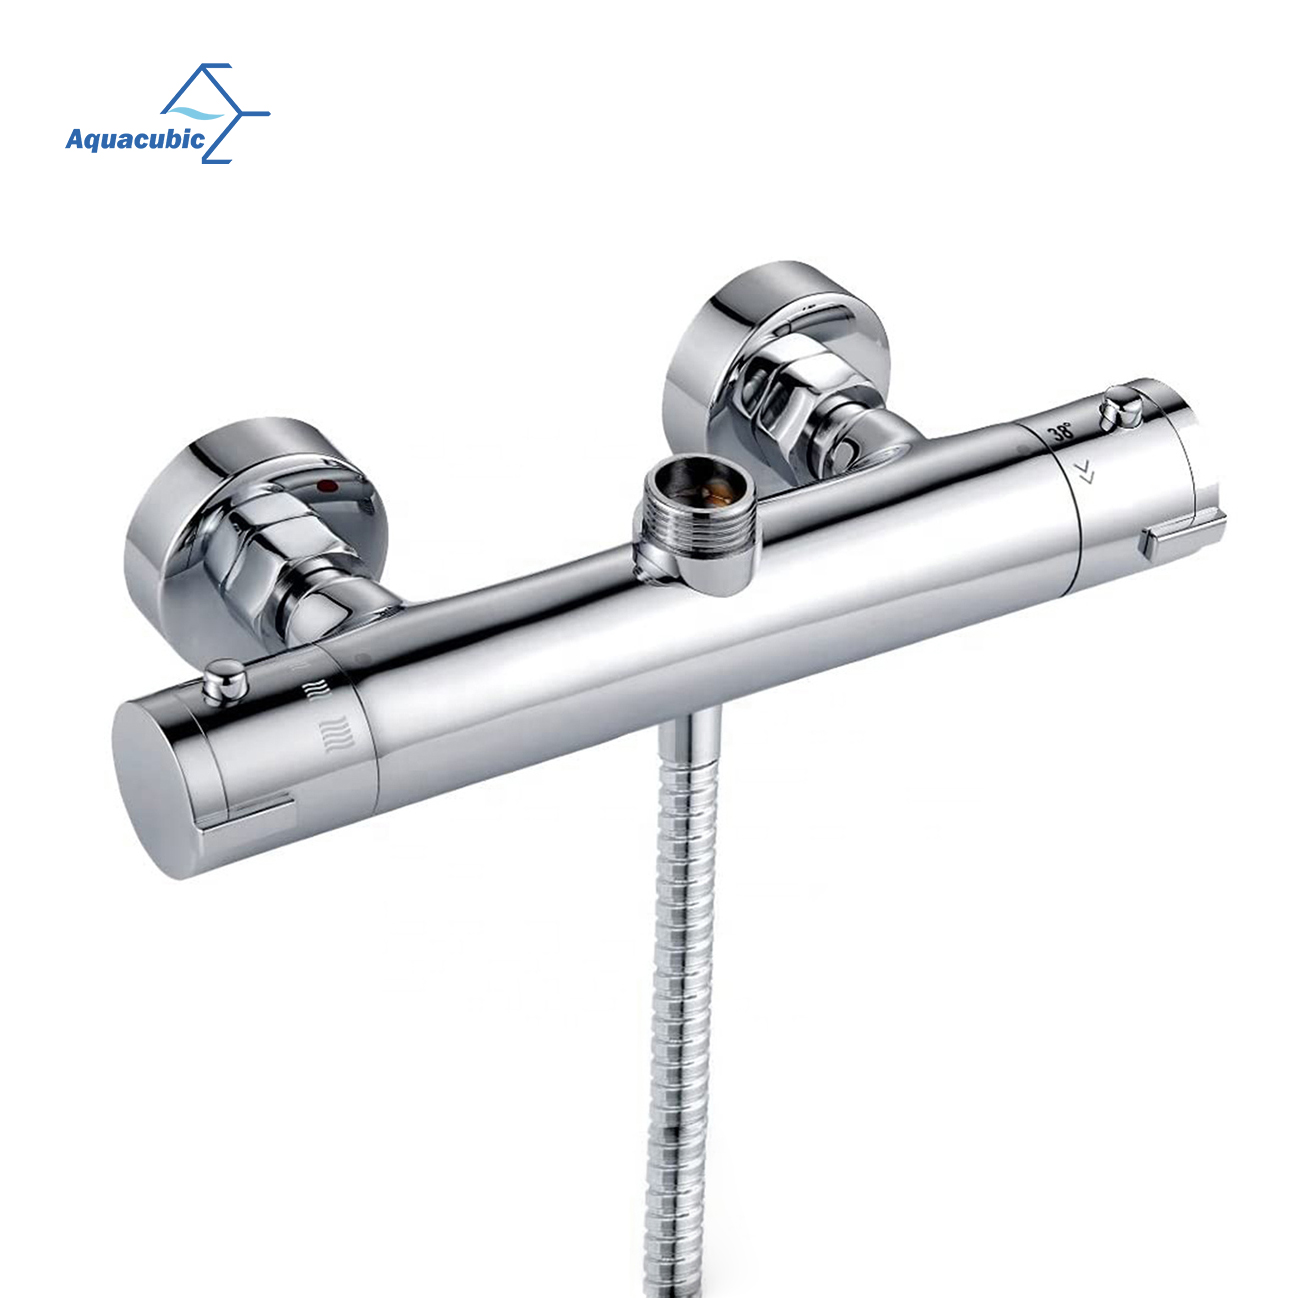 Válvula termostática para grifo de agua de baño y ducha Aquacubic WRAS cUPC, montaje en pared, con rosca NPT, estándar de EE. UU.